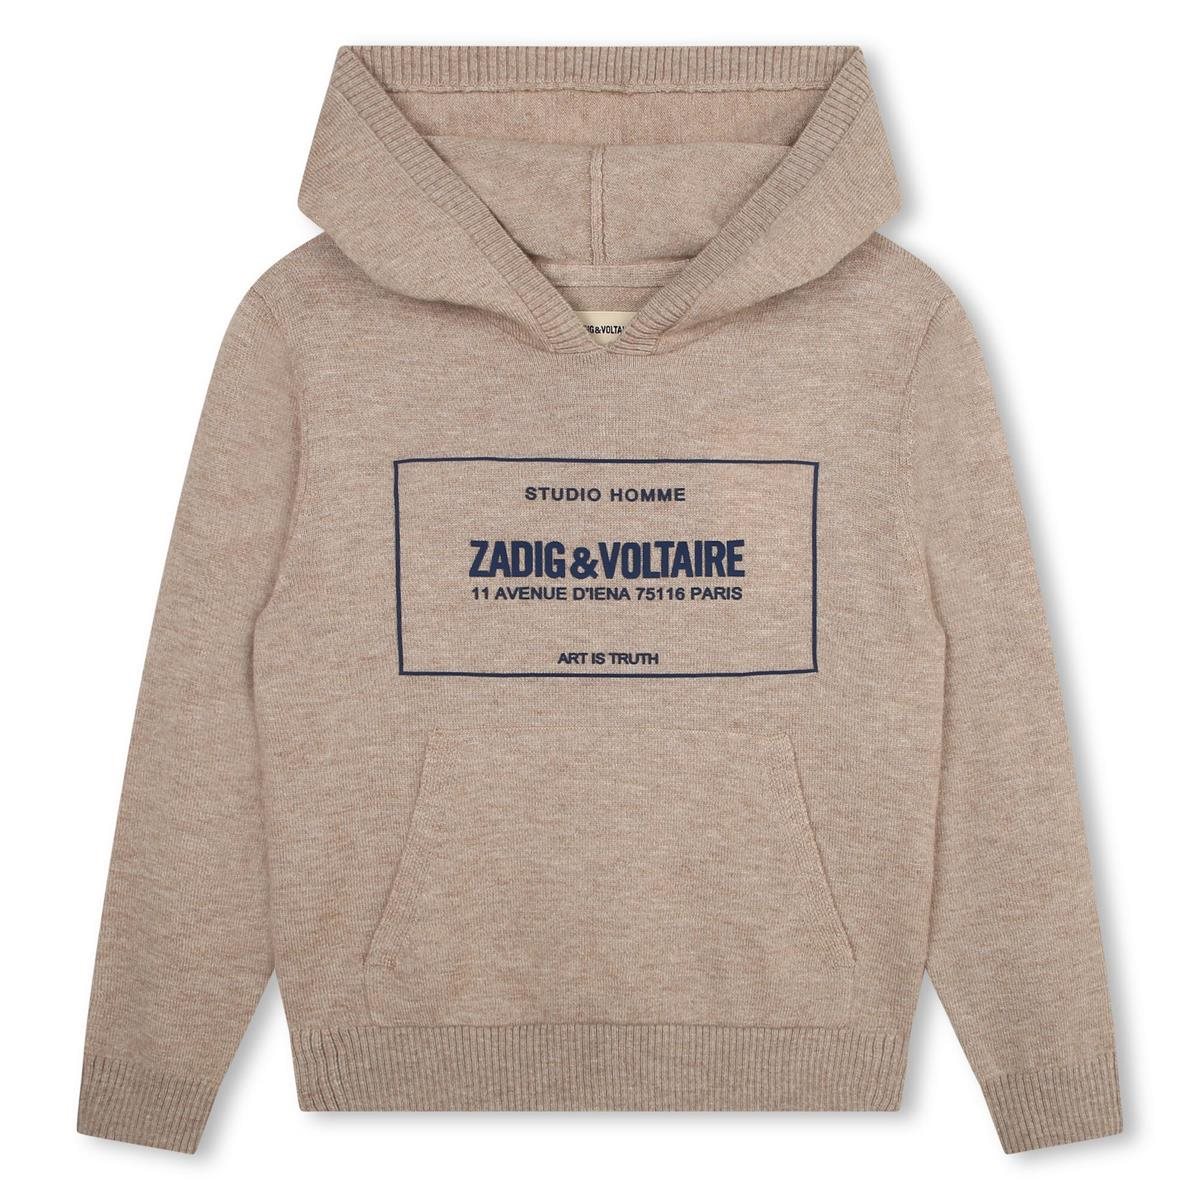 Zadig & Voltaire hoodie